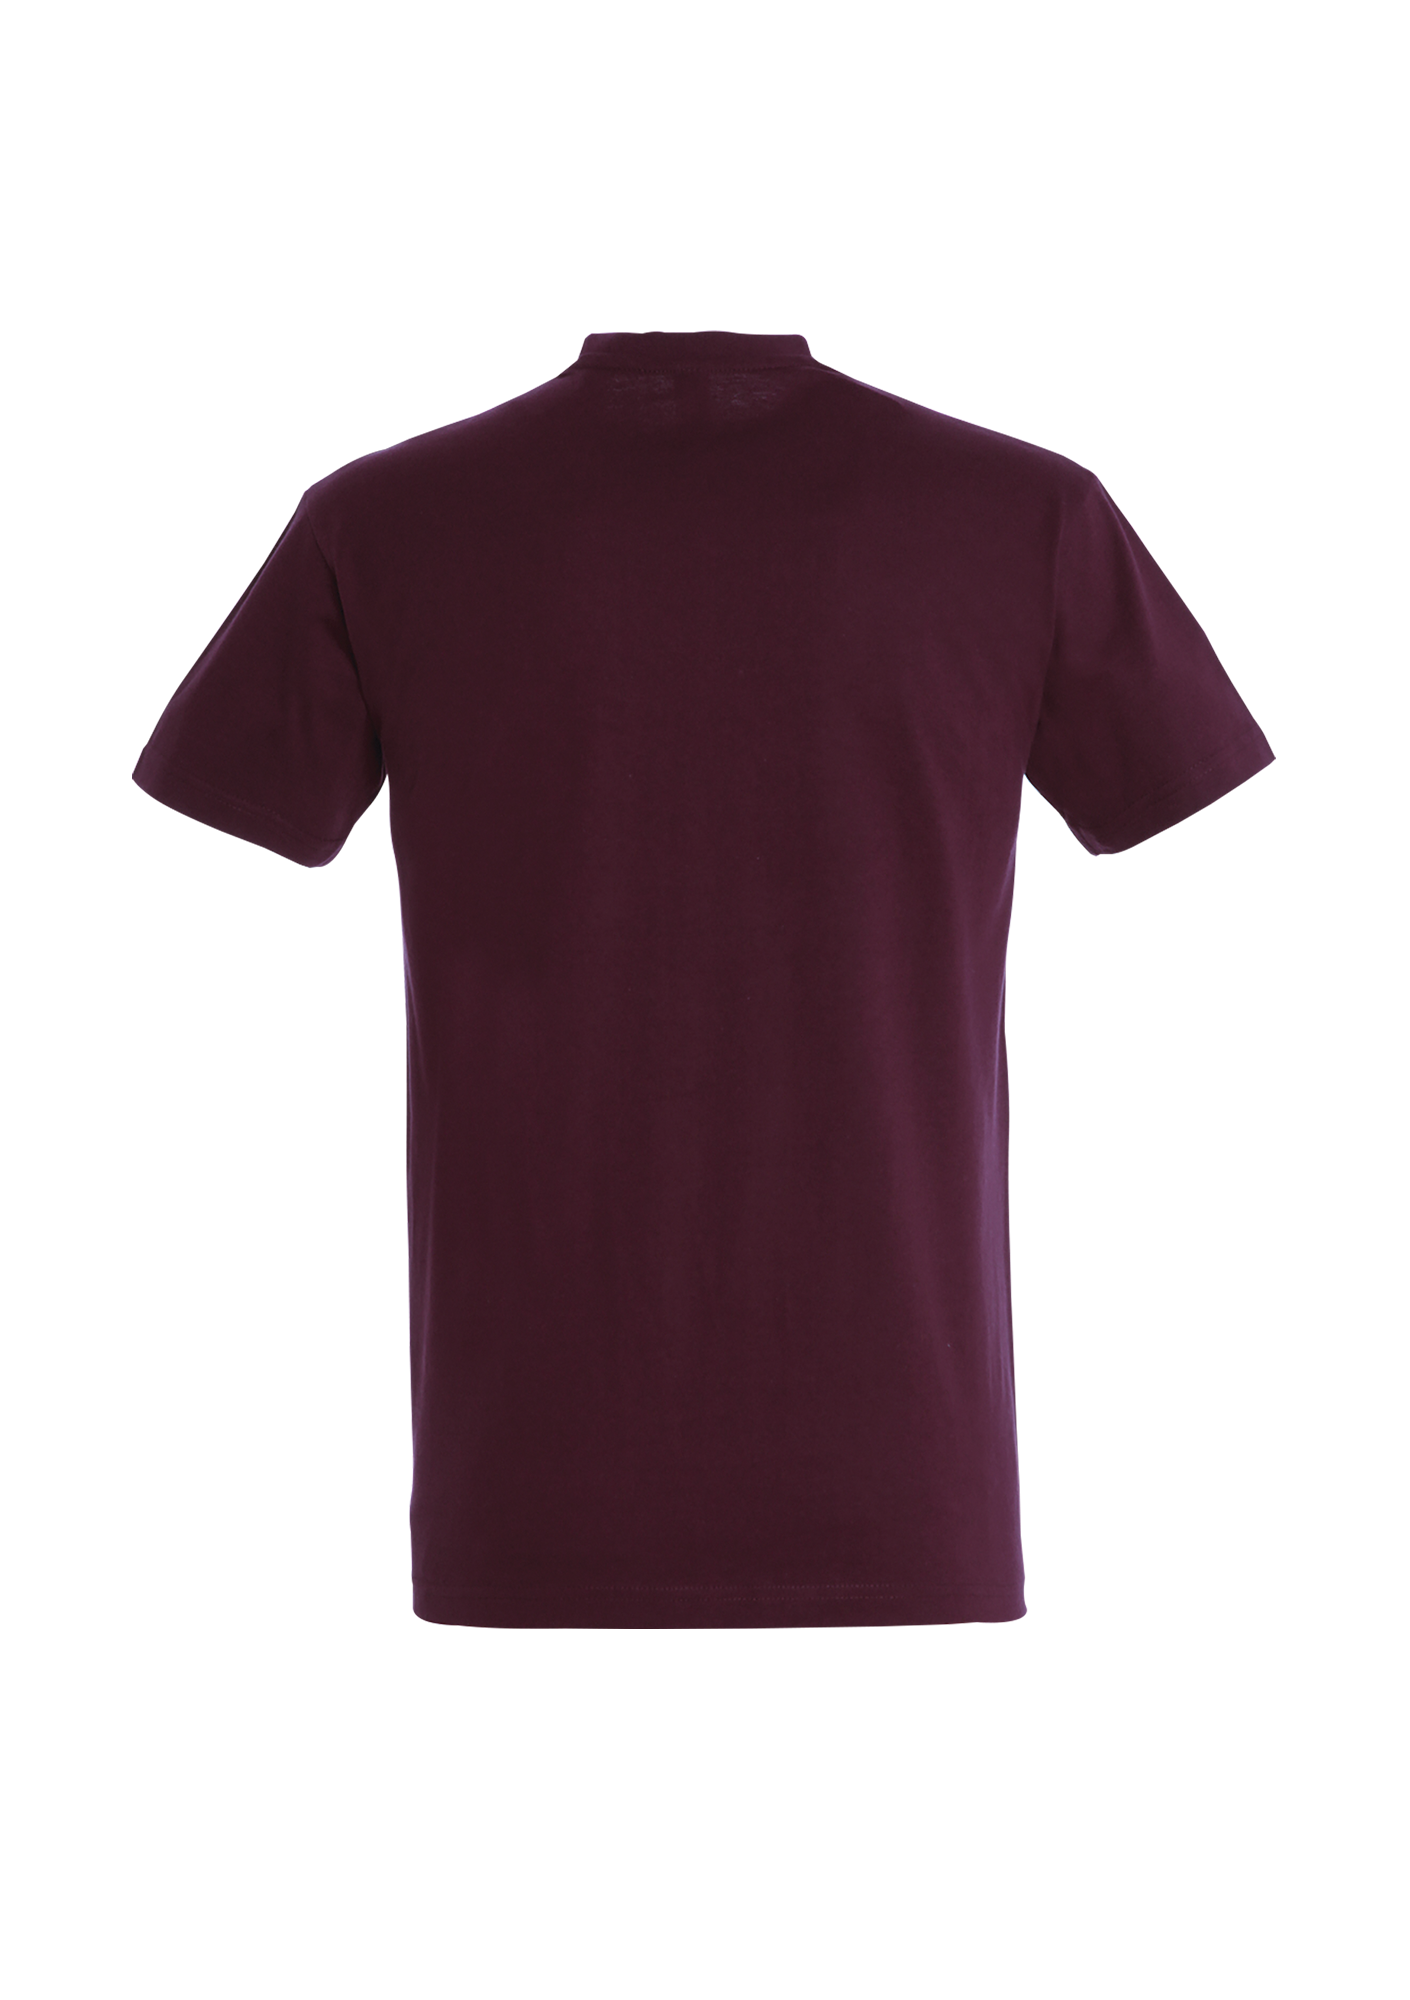 T-shirt Homme bordeaux - CFL-IMPERIAL-BORDEAUXDOS_1